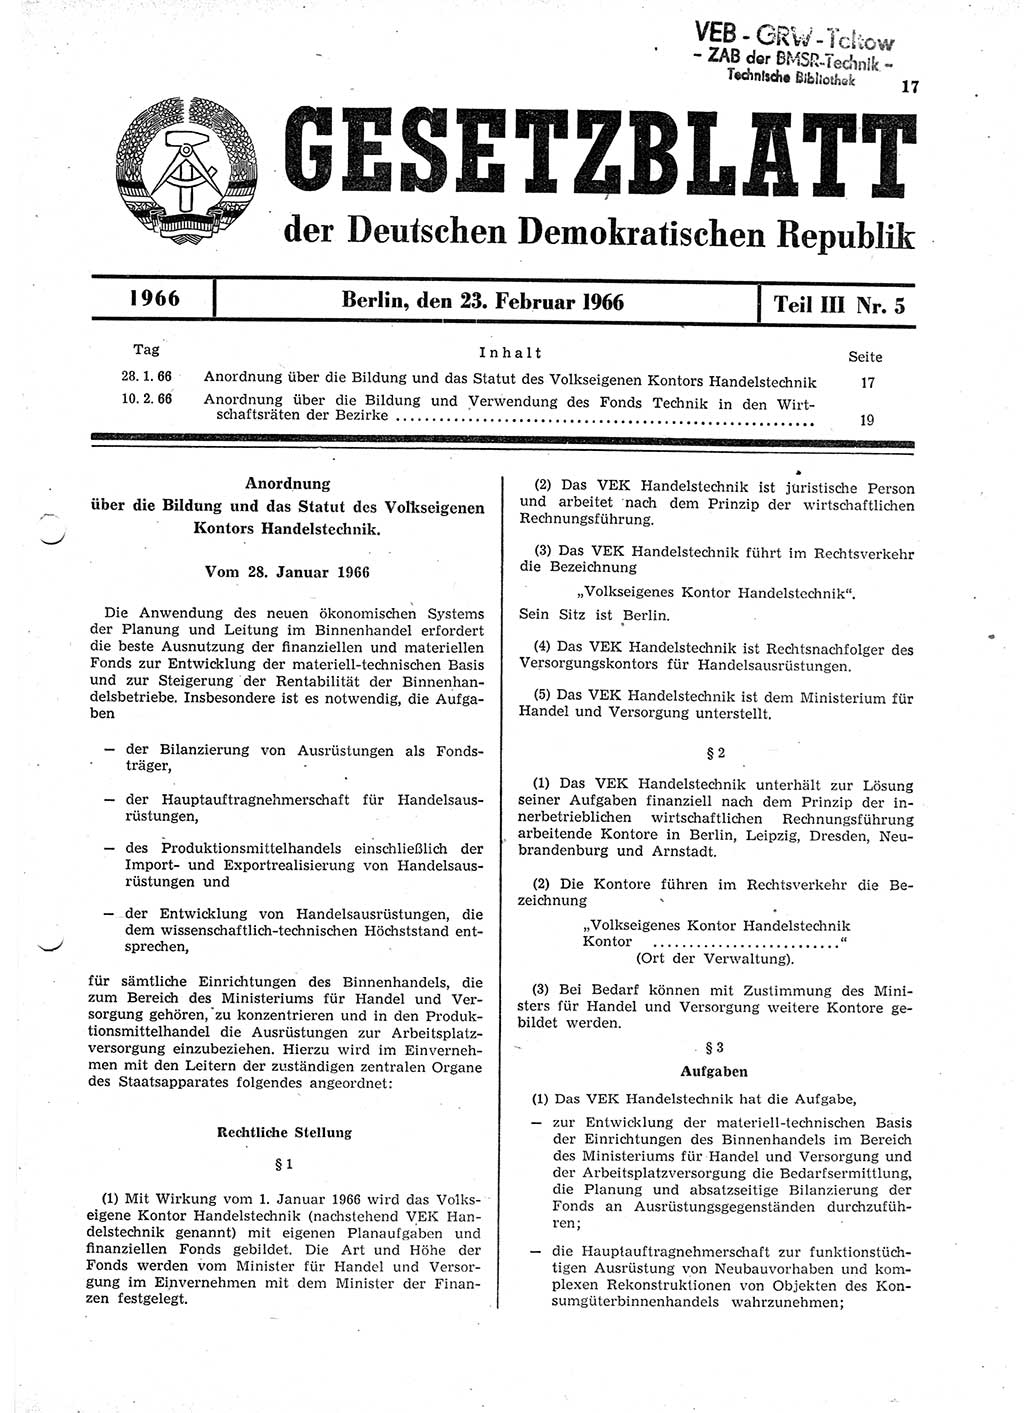 Gesetzblatt (GBl.) der Deutschen Demokratischen Republik (DDR) Teil ⅠⅠⅠ 1966, Seite 17 (GBl. DDR ⅠⅠⅠ 1966, S. 17)